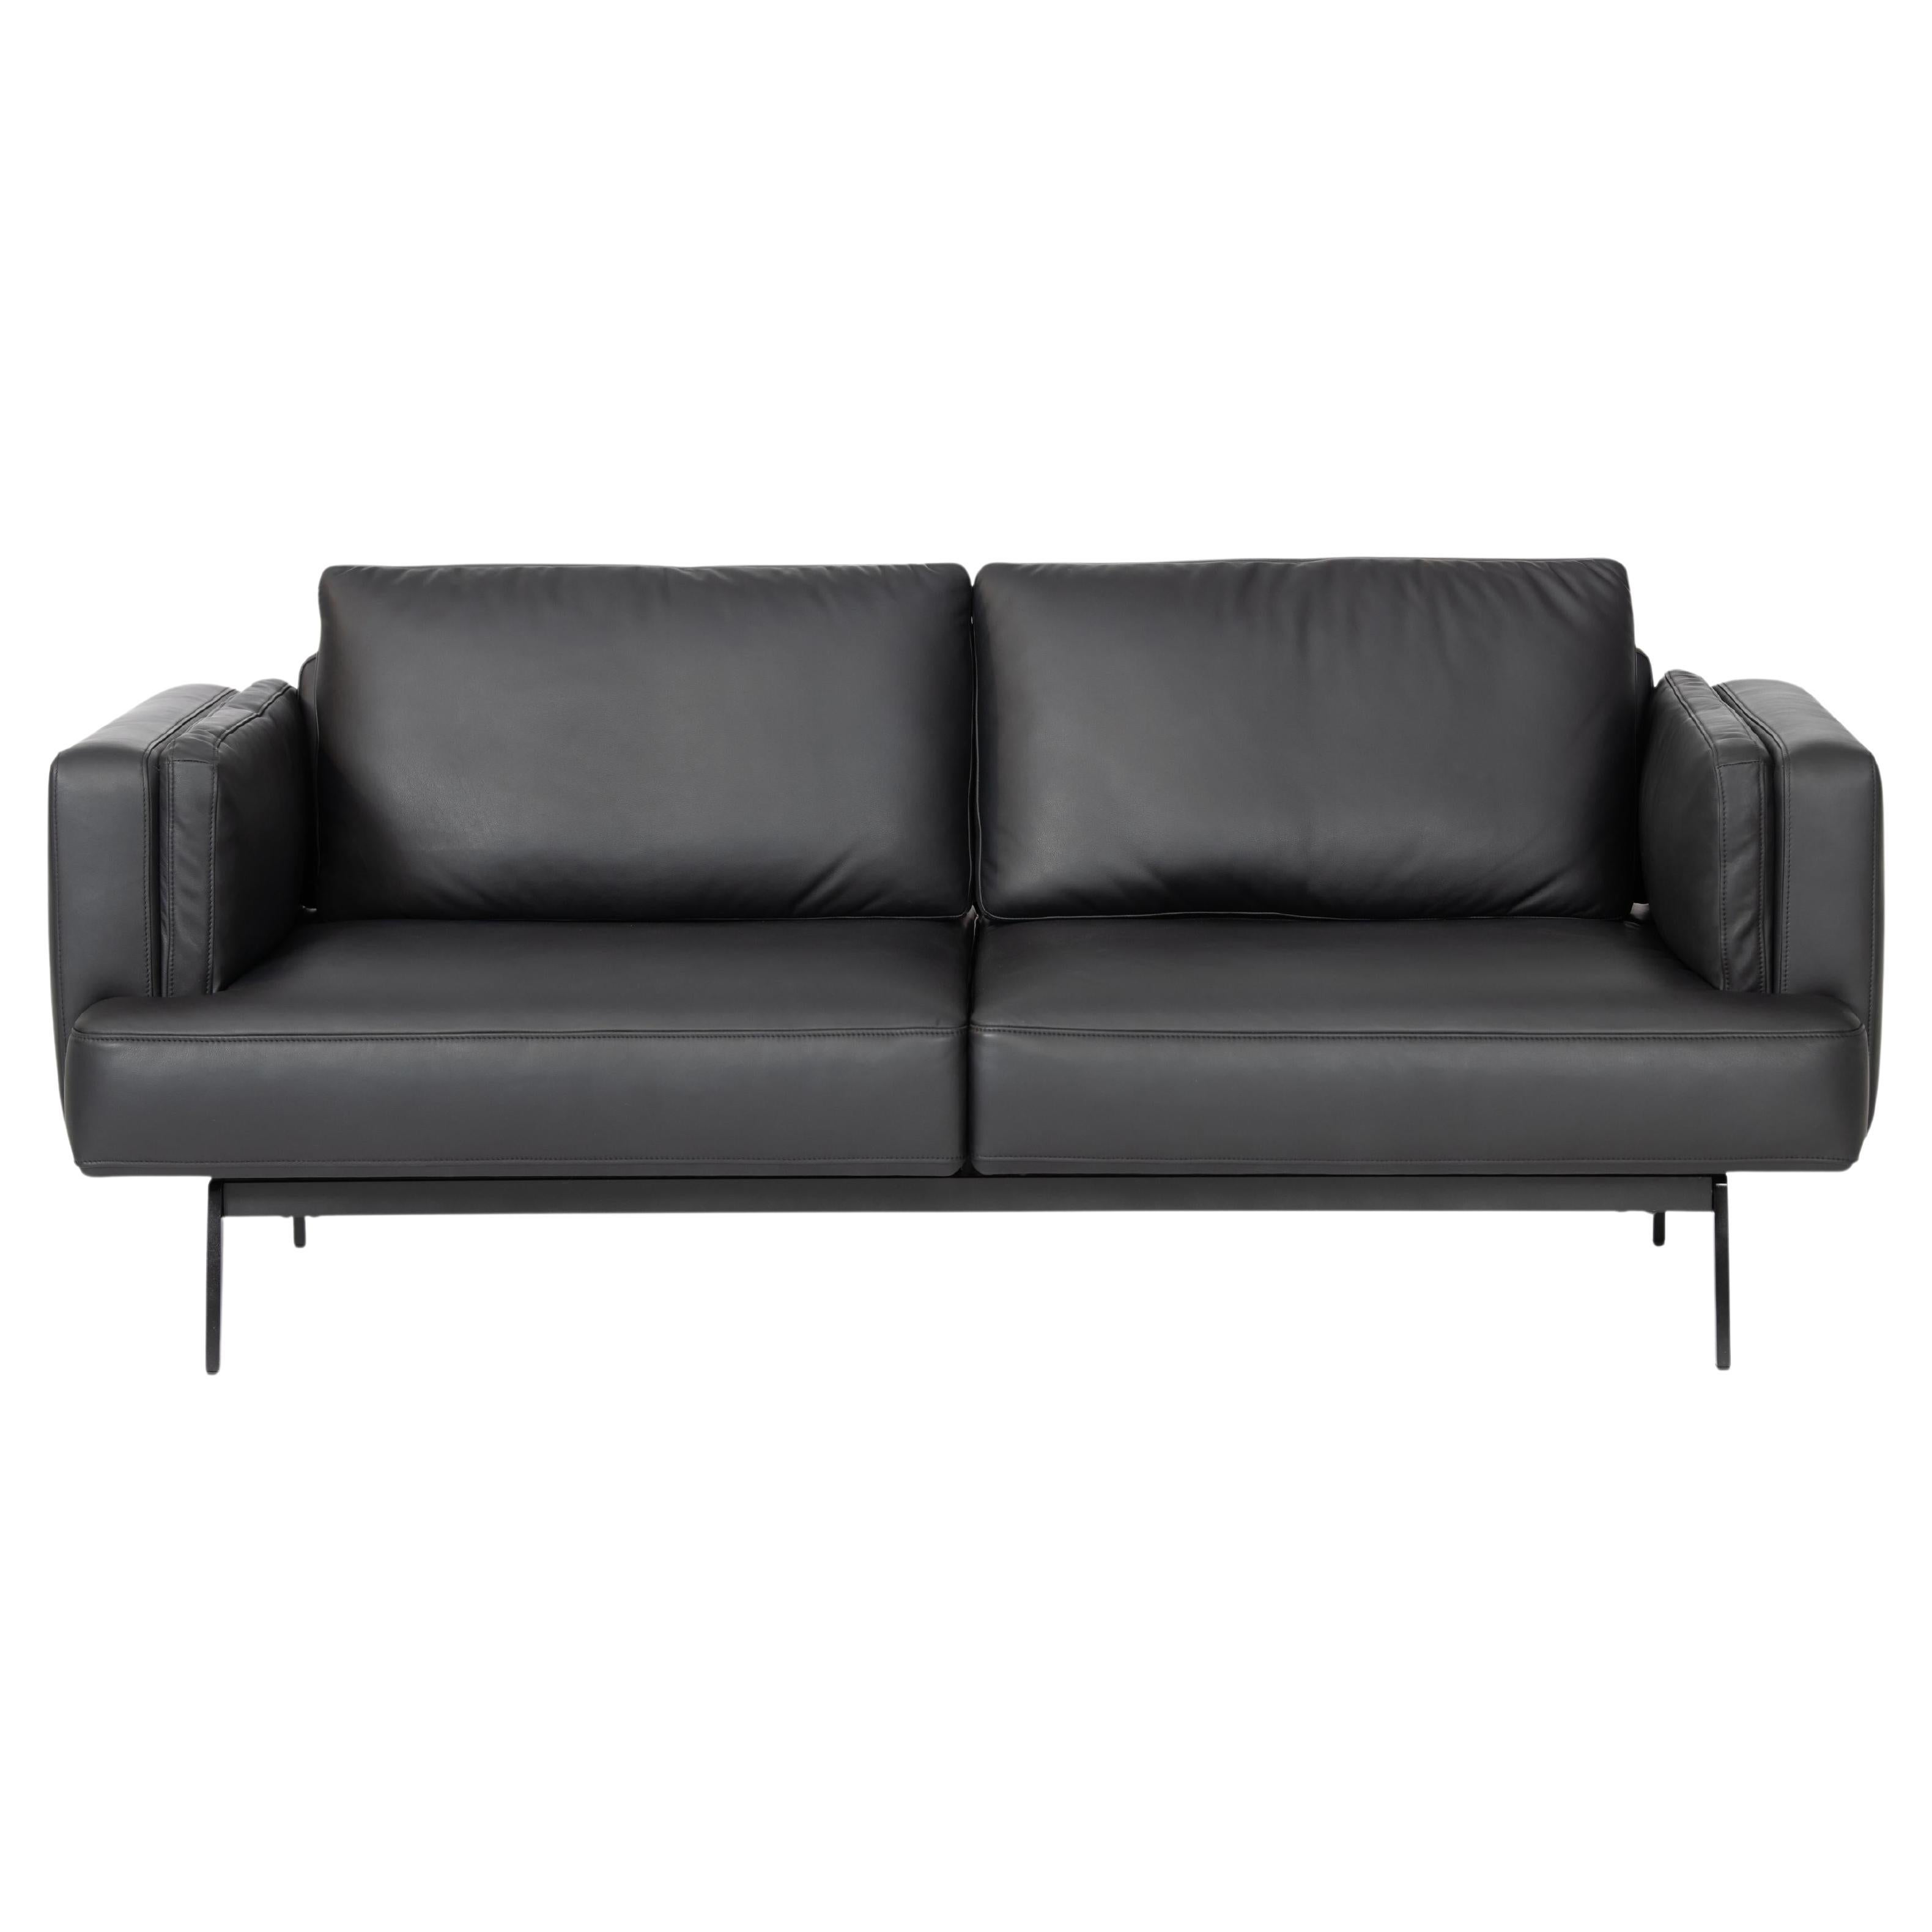 DeSede Ds-747/04 Mehrfunktionales Sofa mit Sitz und Rückenlehne aus schwarzem Leder